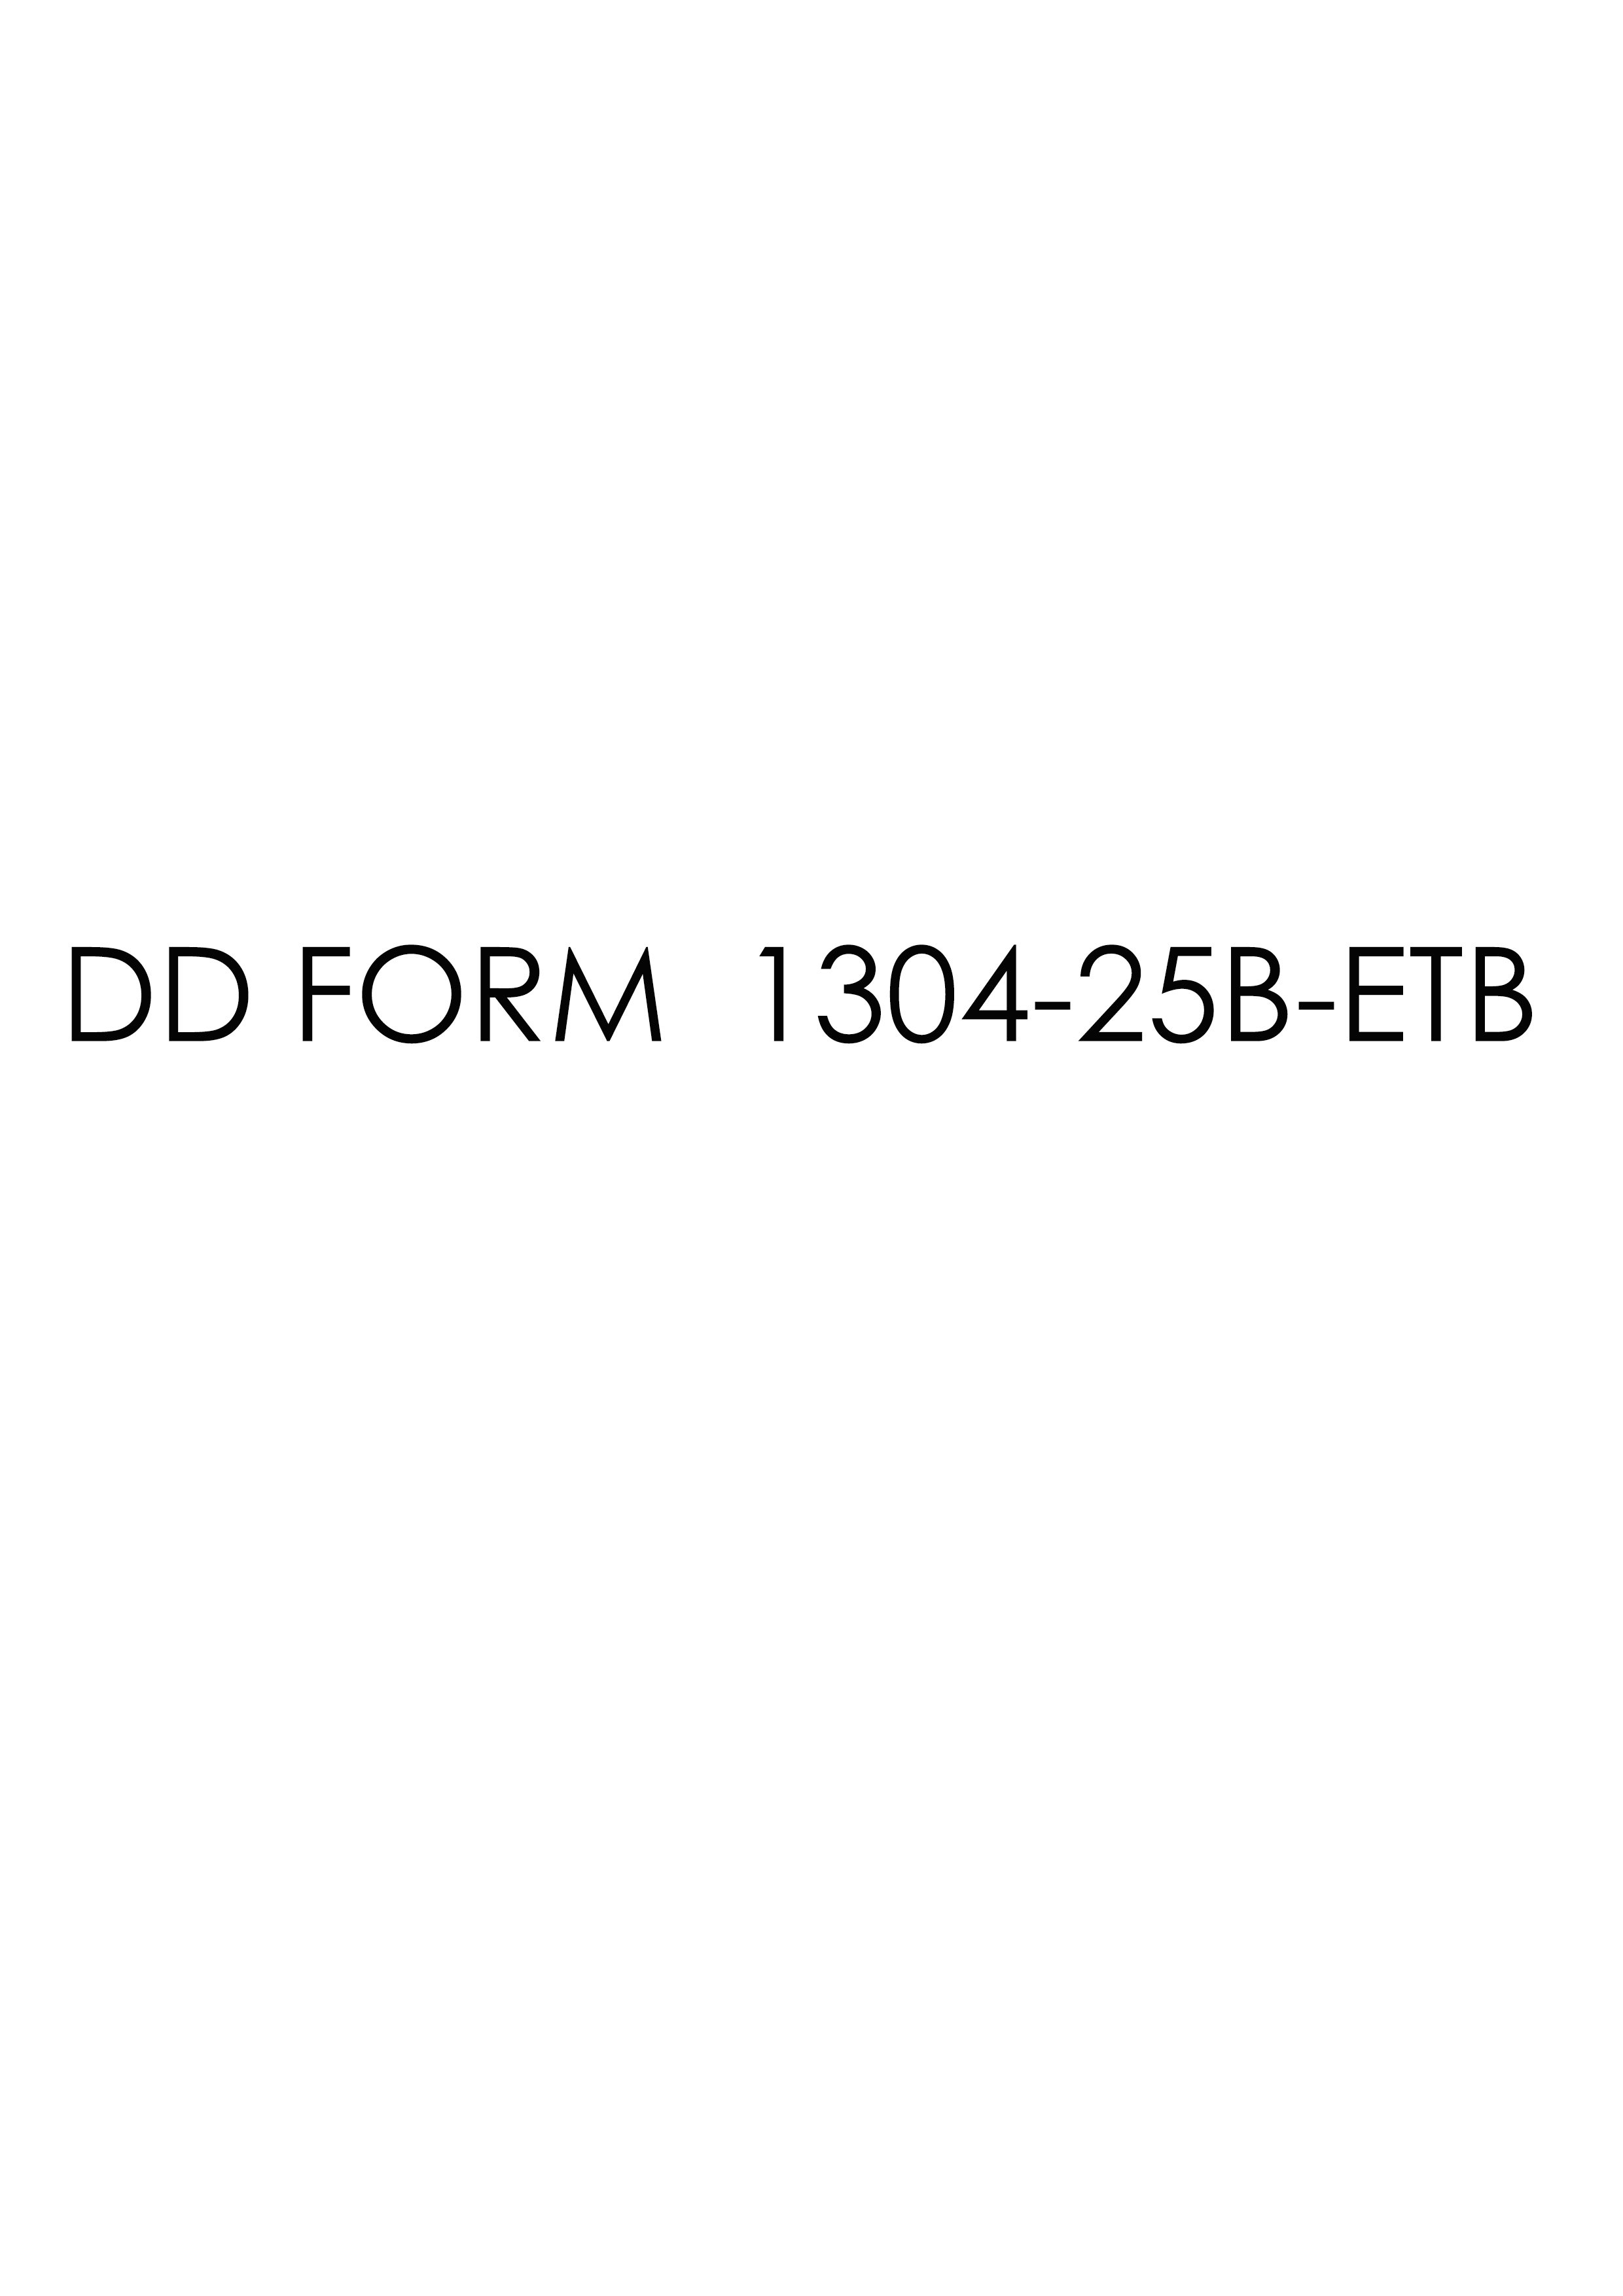 dd Form 1304-25B-ETB fillable